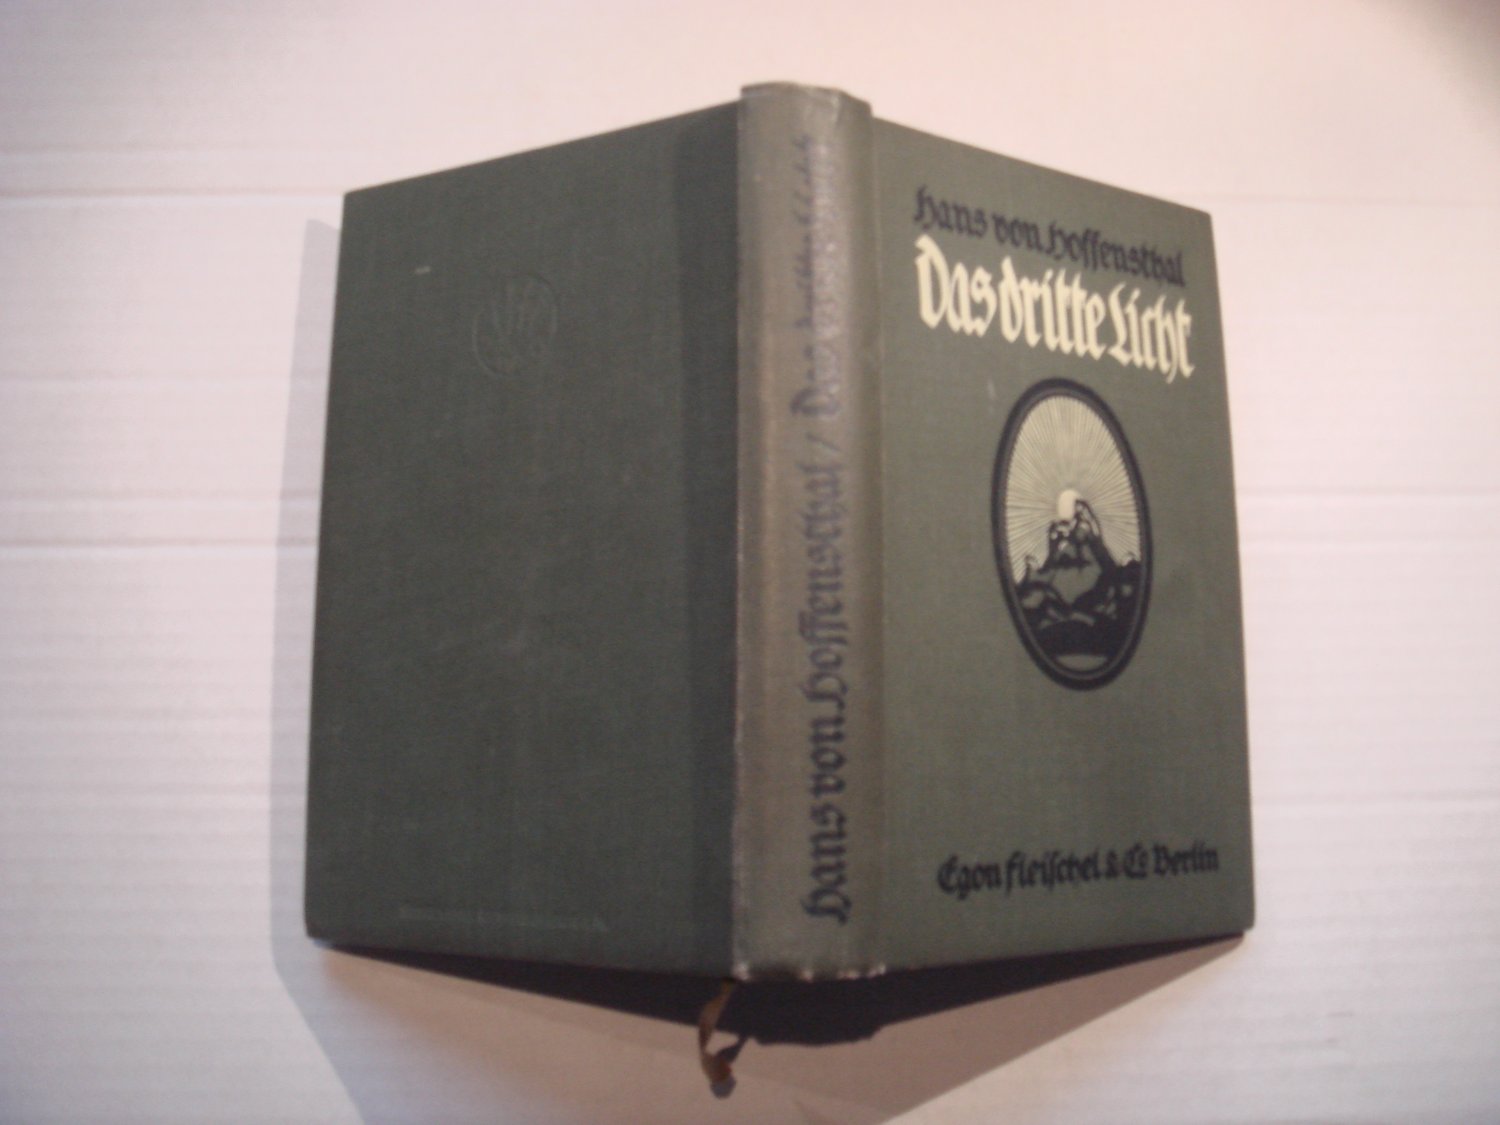 Das dritte Licht: Roman.“ (Hoffensthal, Hans von) – Buch antiquarisch  kaufen – A02tavjC01ZZO